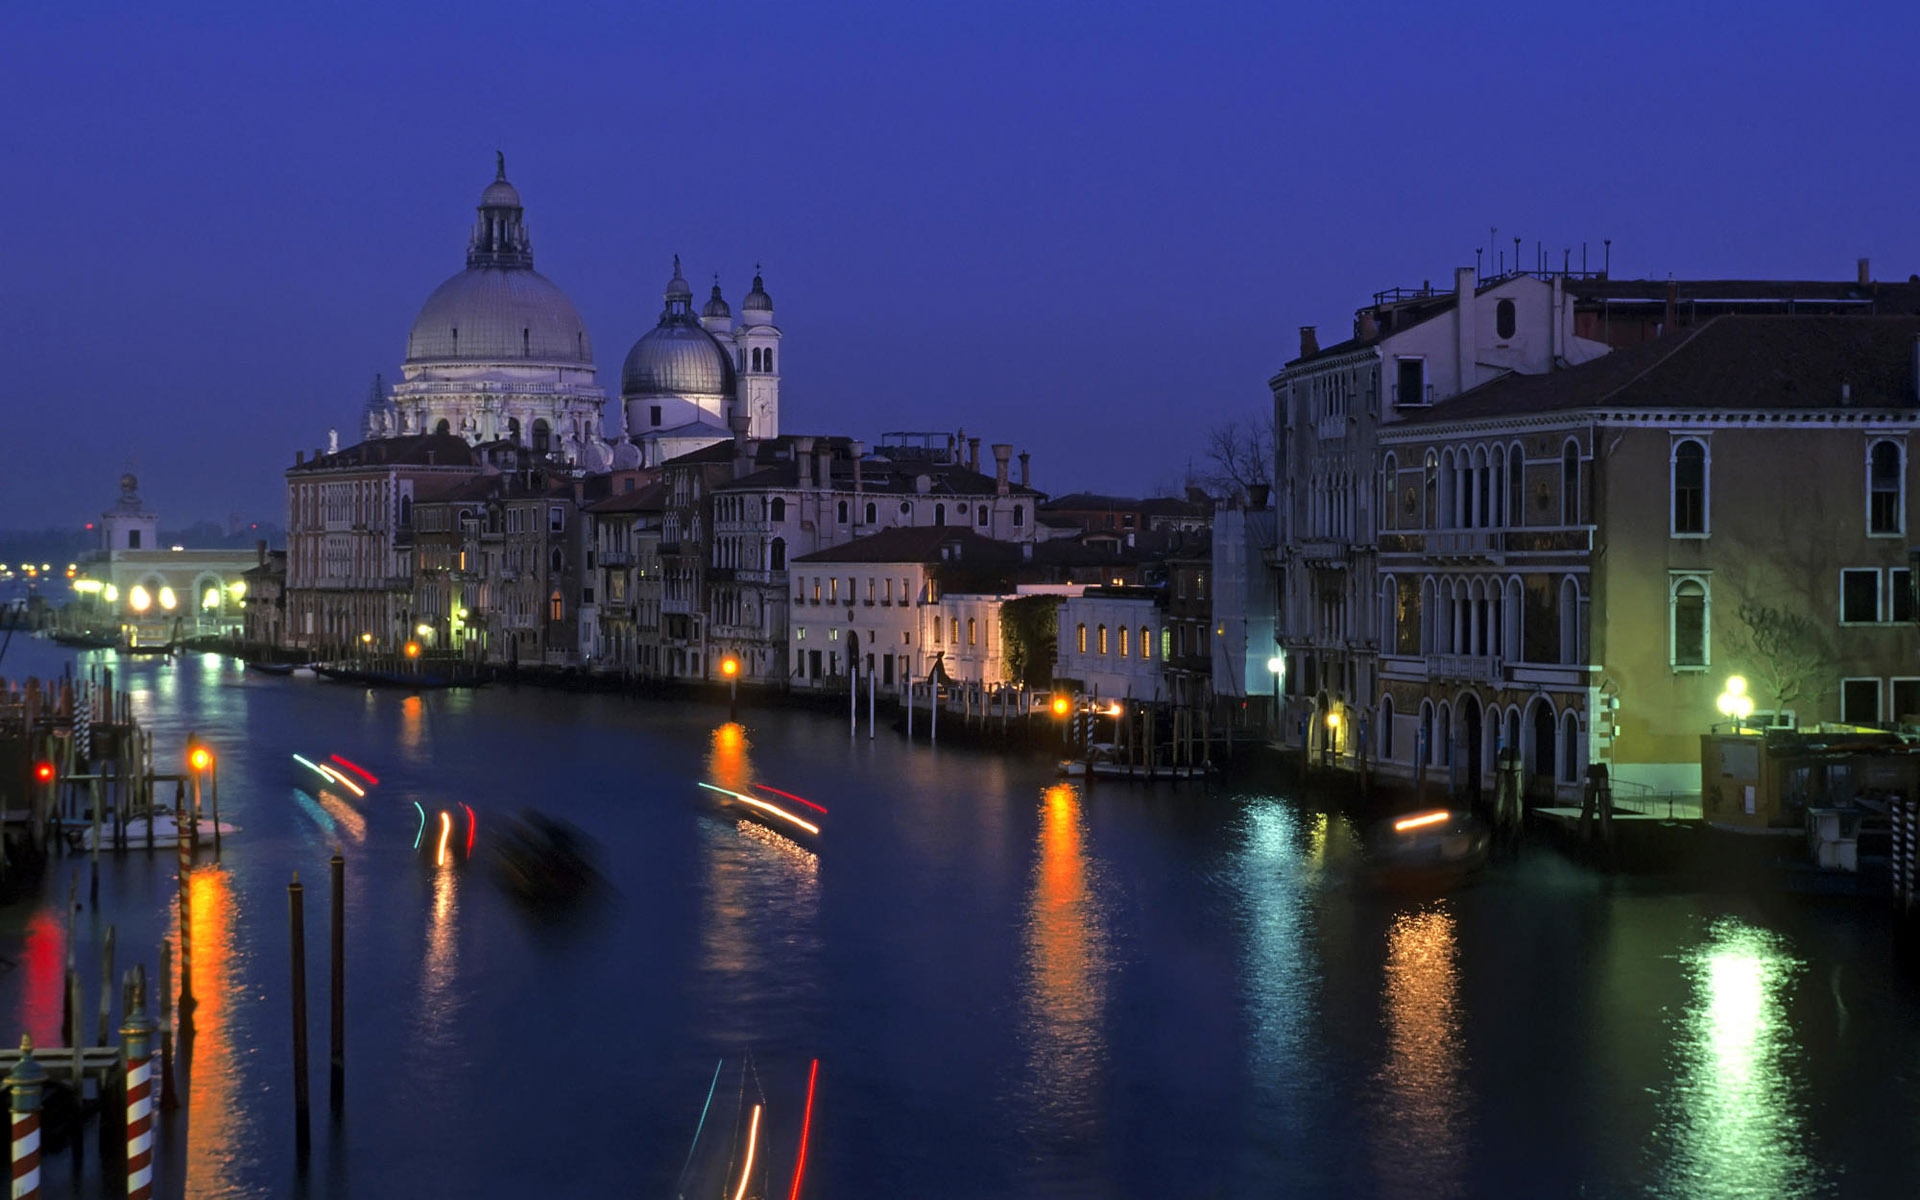 Картинки Город, венеция, город на воде, италия, свет, яркий, свет, ночь, ночь город, вода, освещение, дом, здание, строительство, архитектура, купол фото и обои на рабочий стол